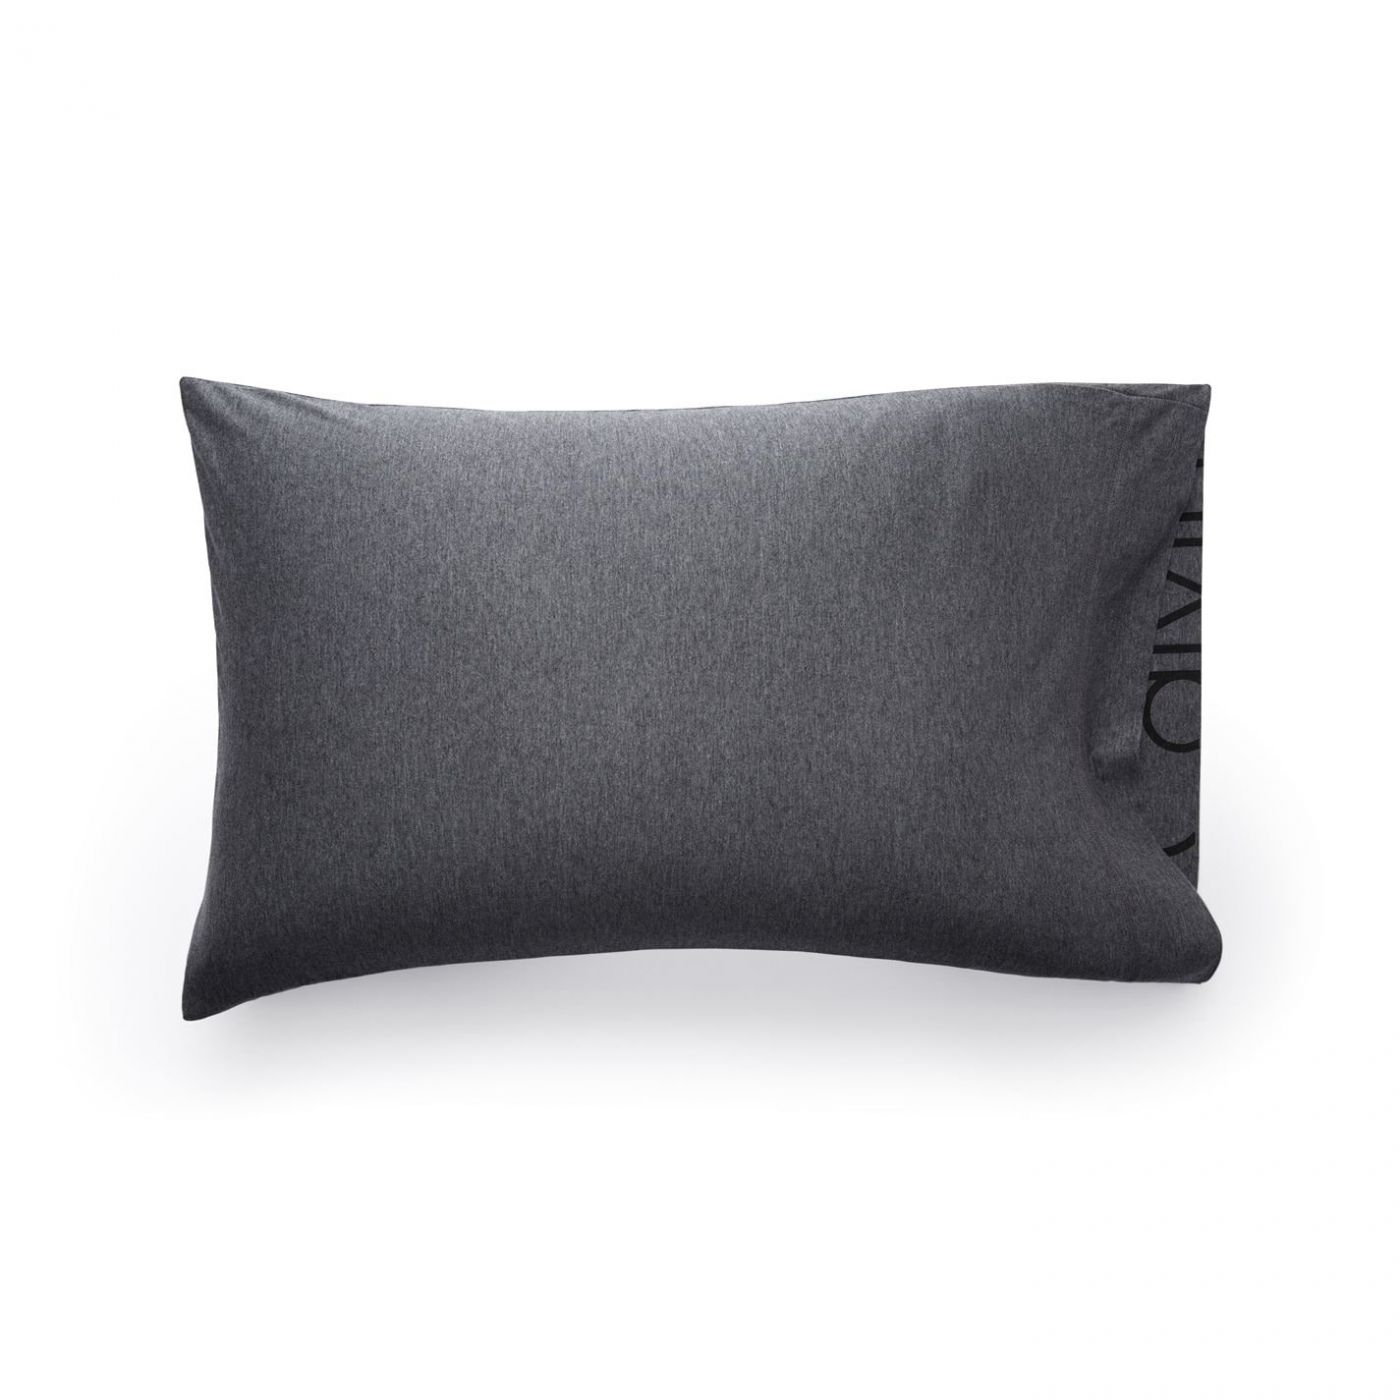 calvin klein body pillow